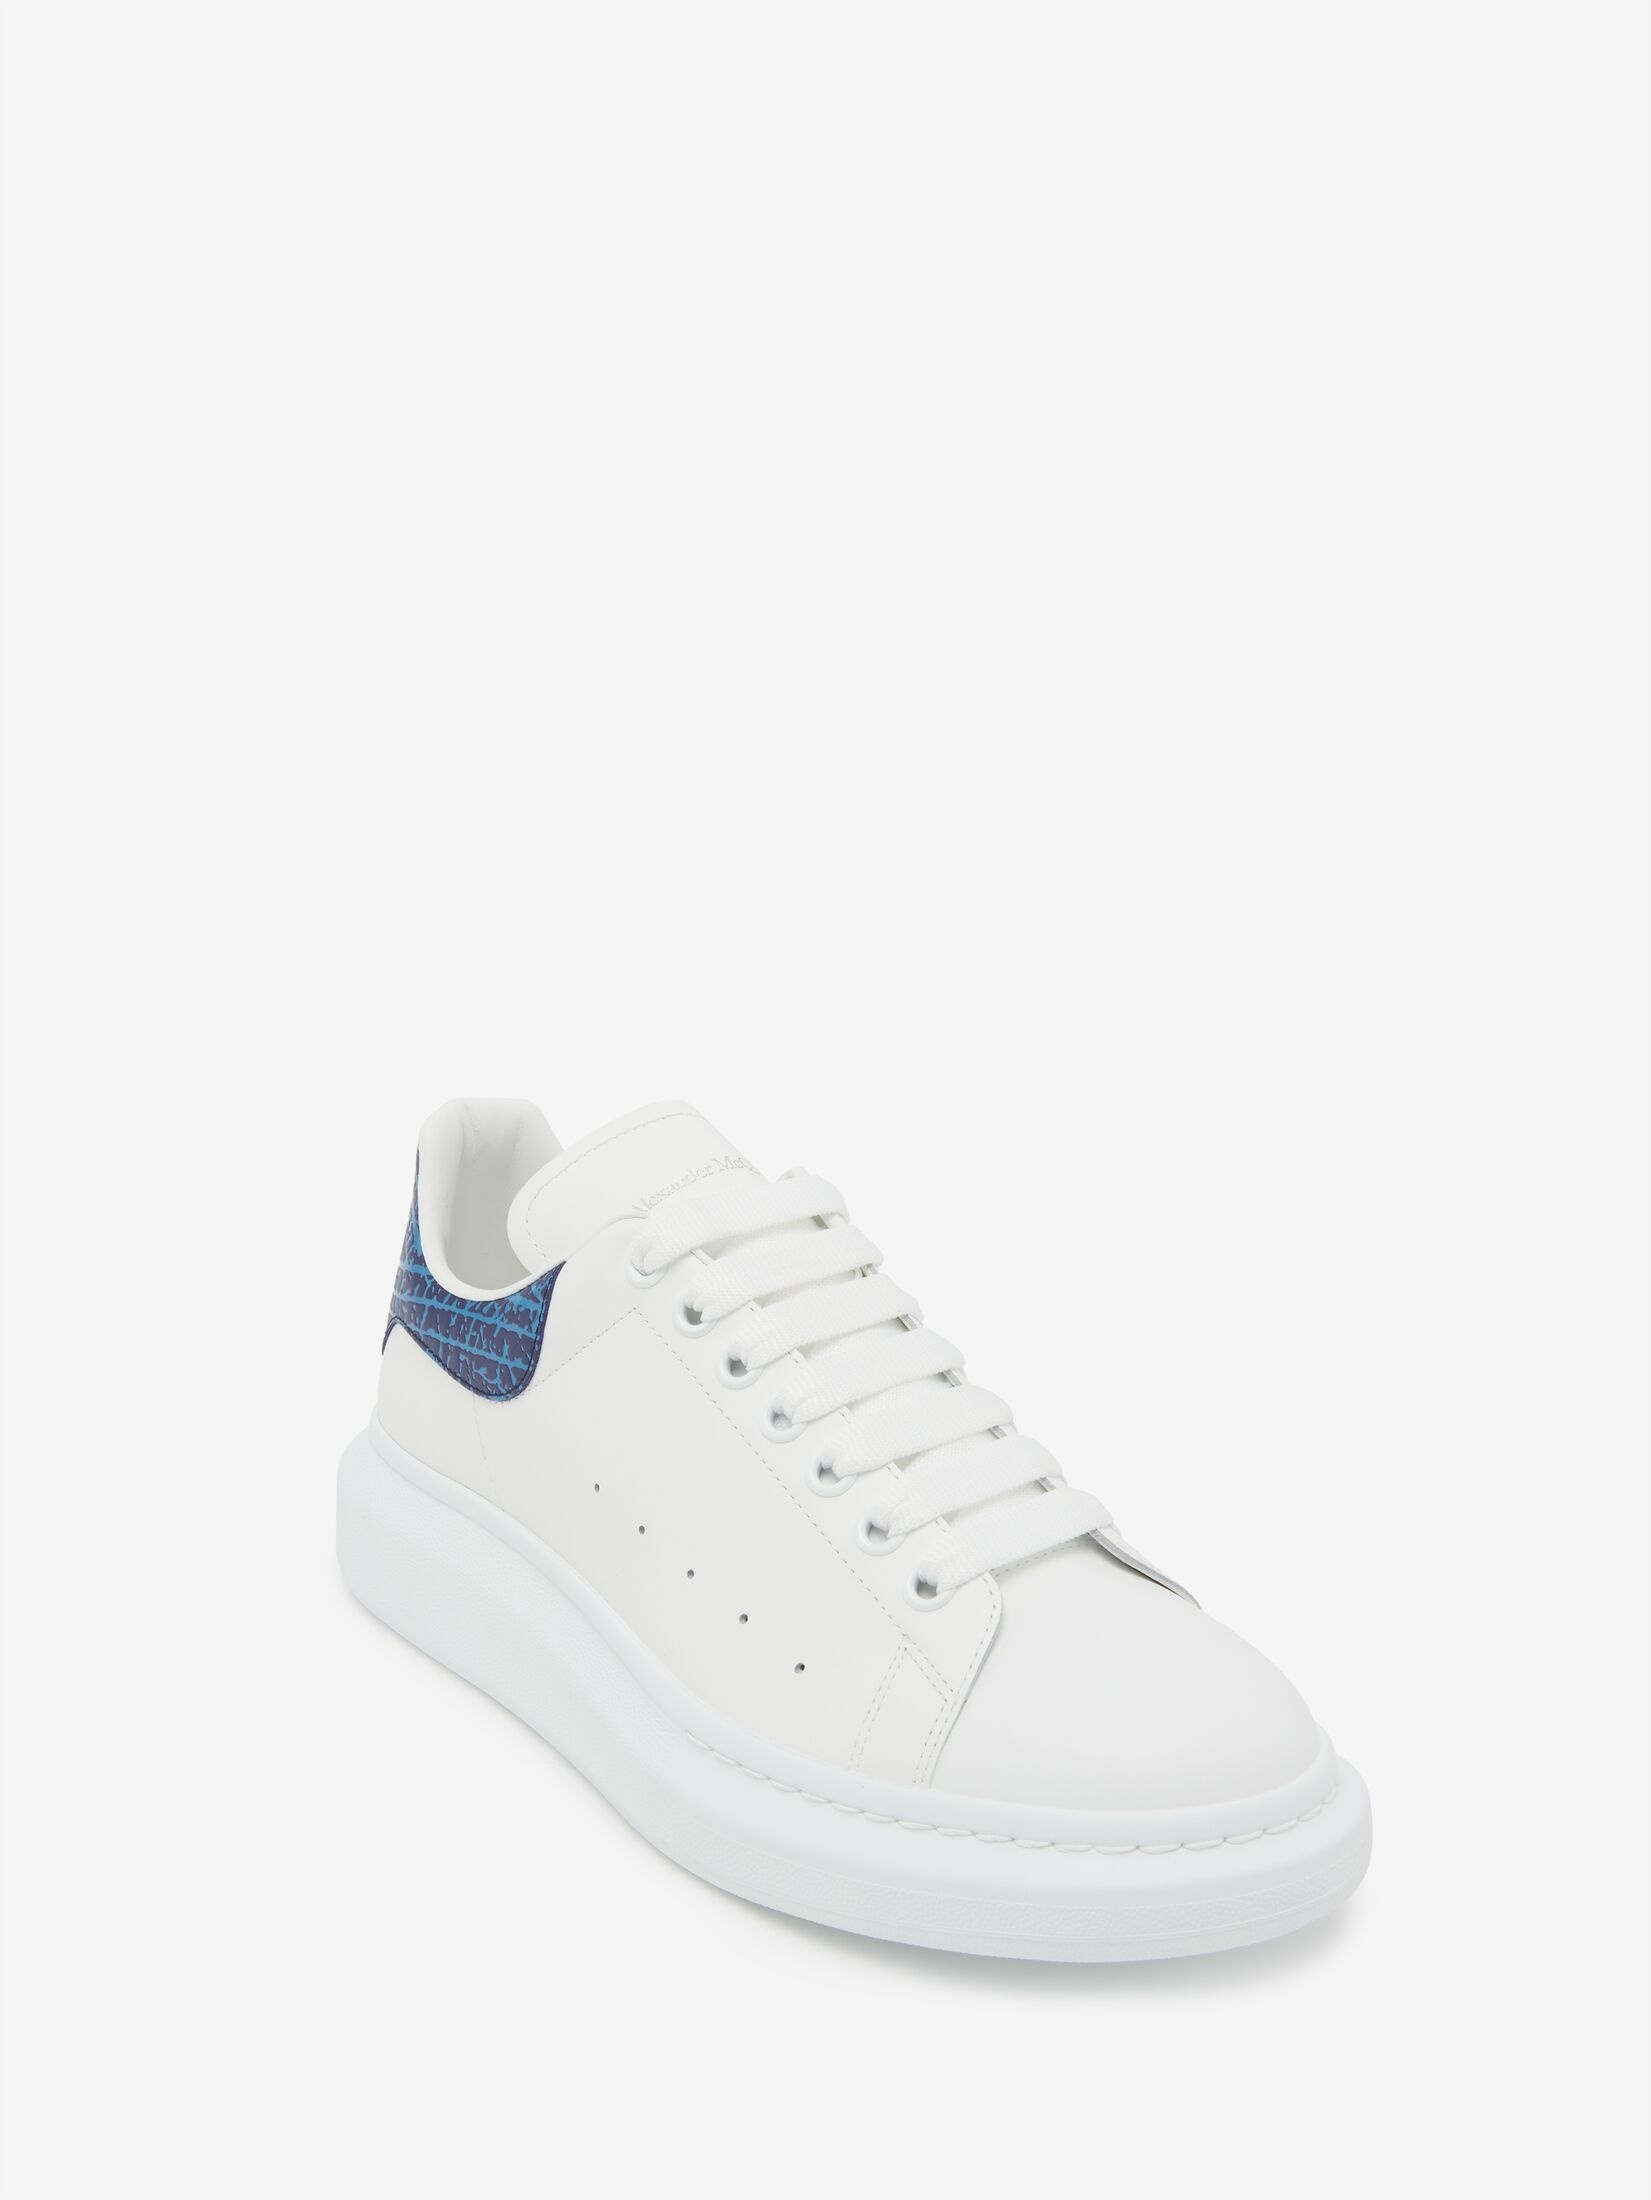 Men's Oversized Sneaker in White/lapis Blue - 4